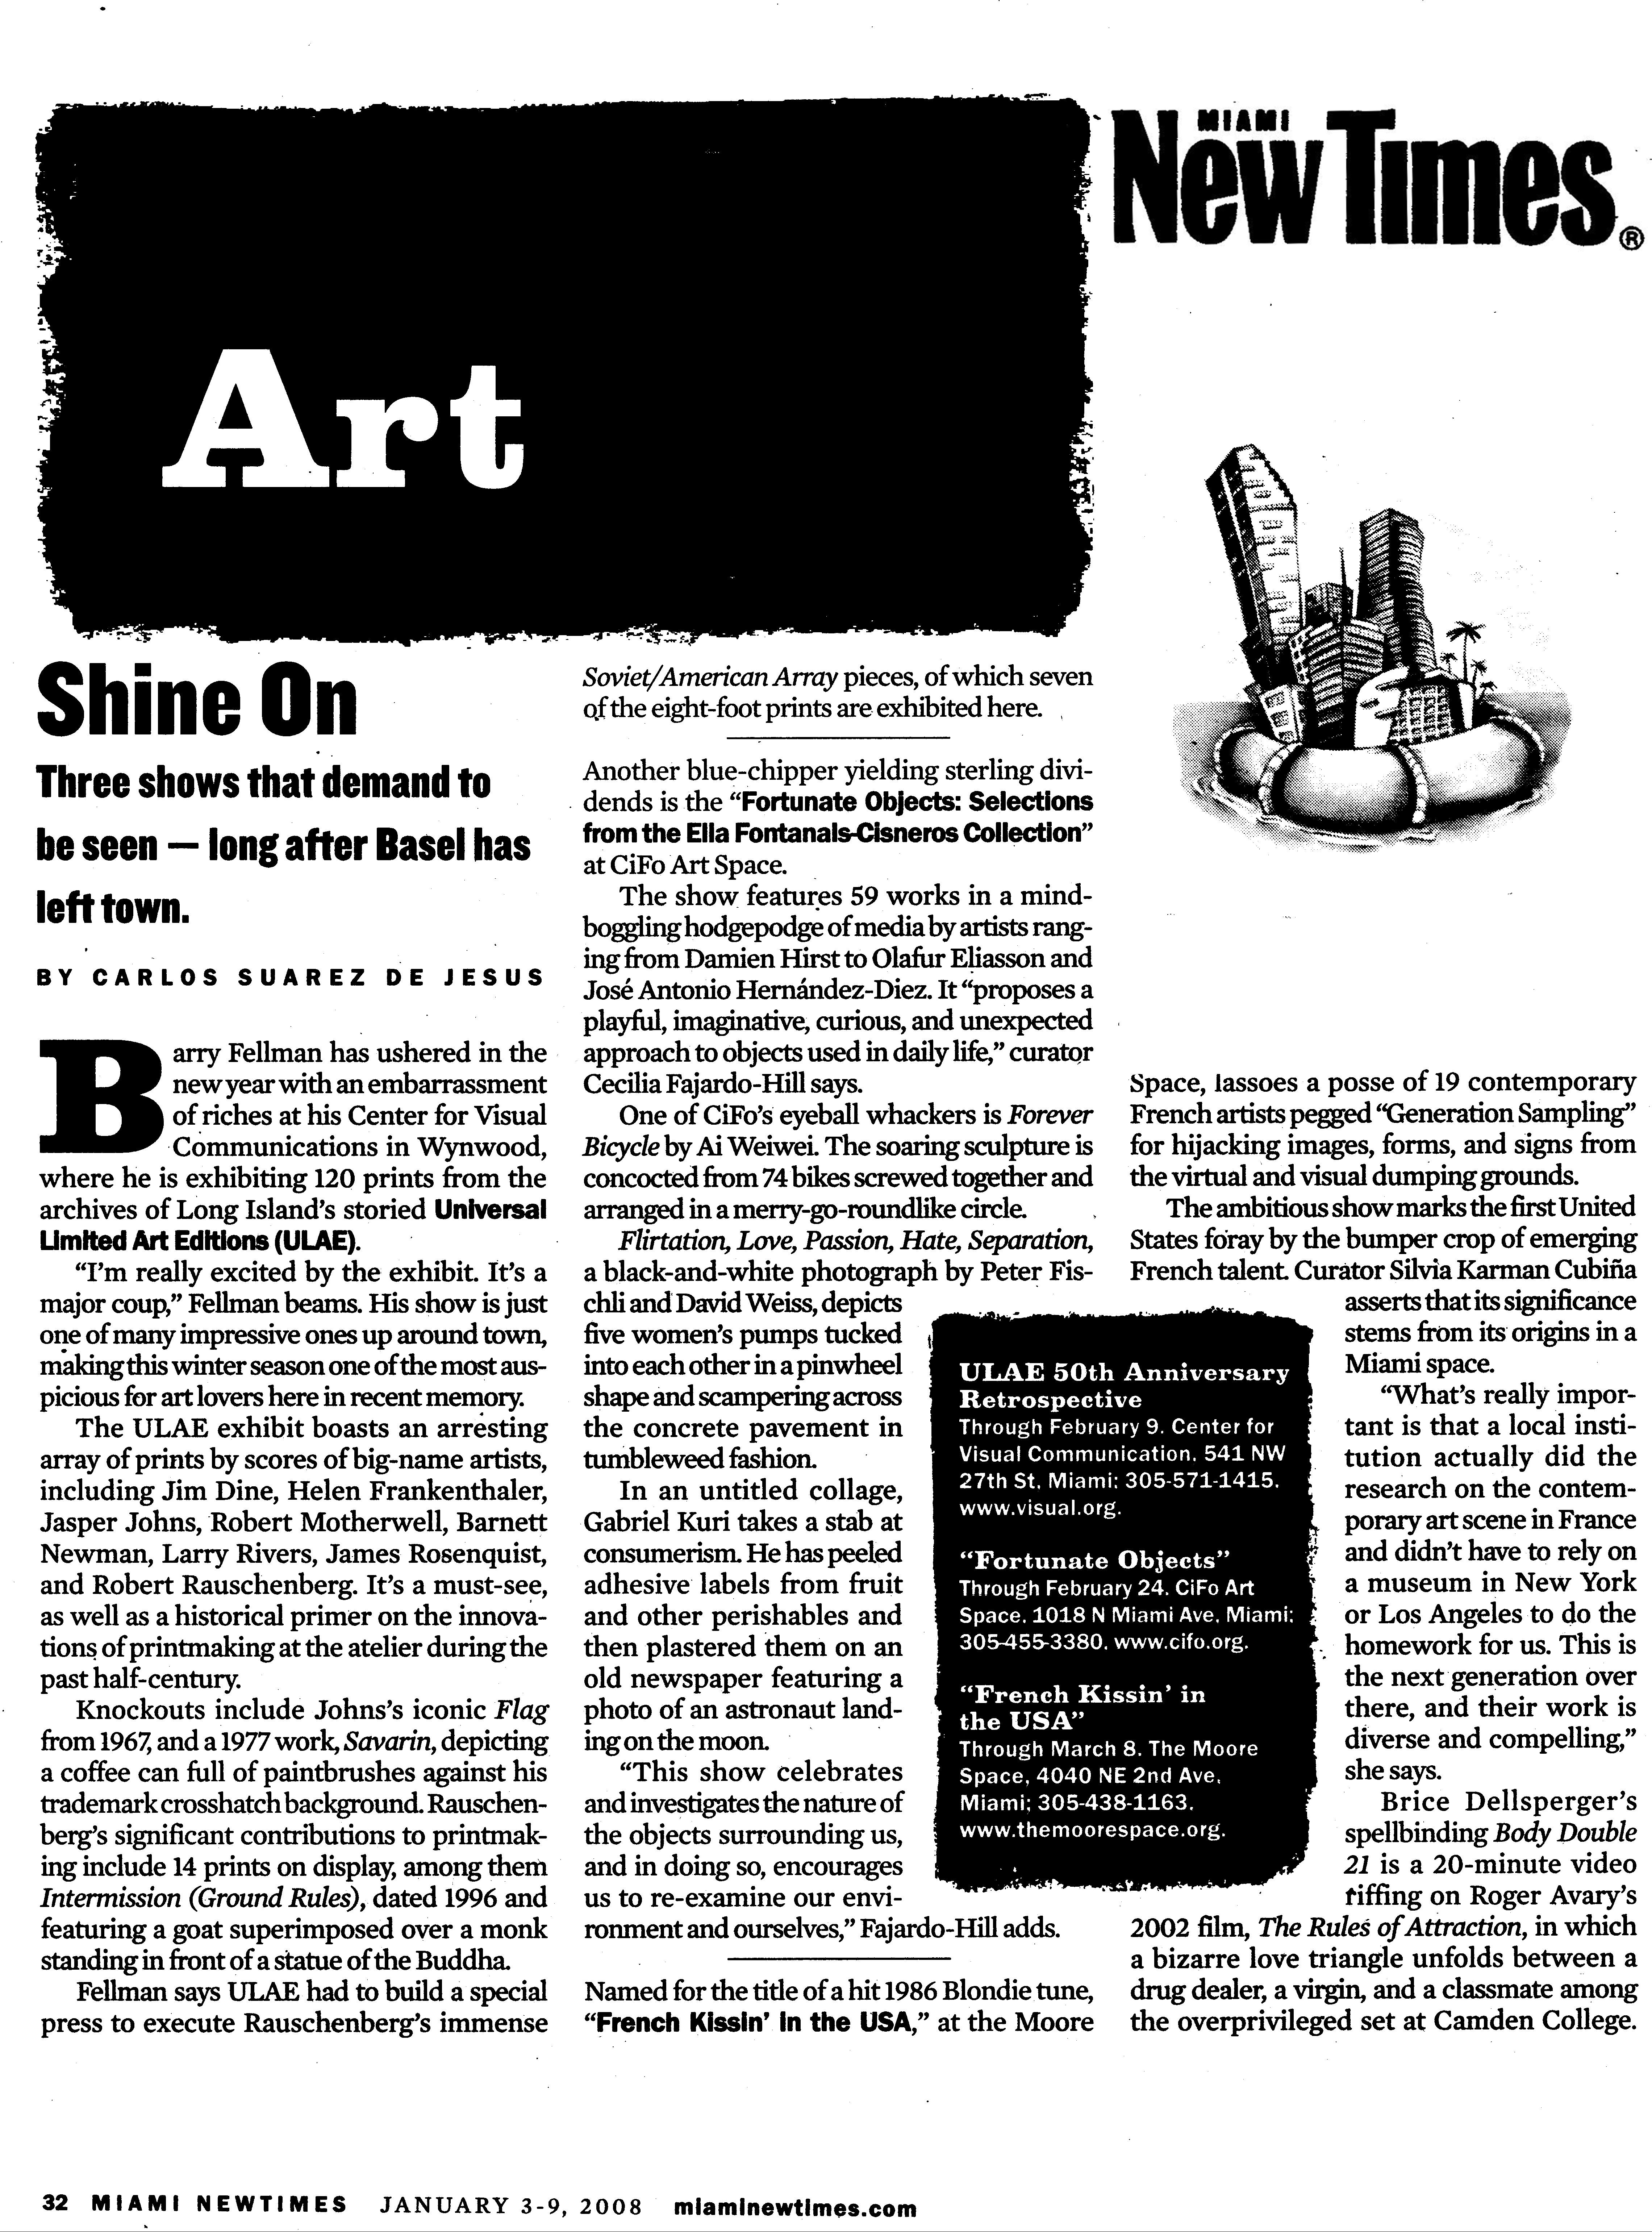 ULAE New Times Reprint Final jpg Review v4 med 01-2008